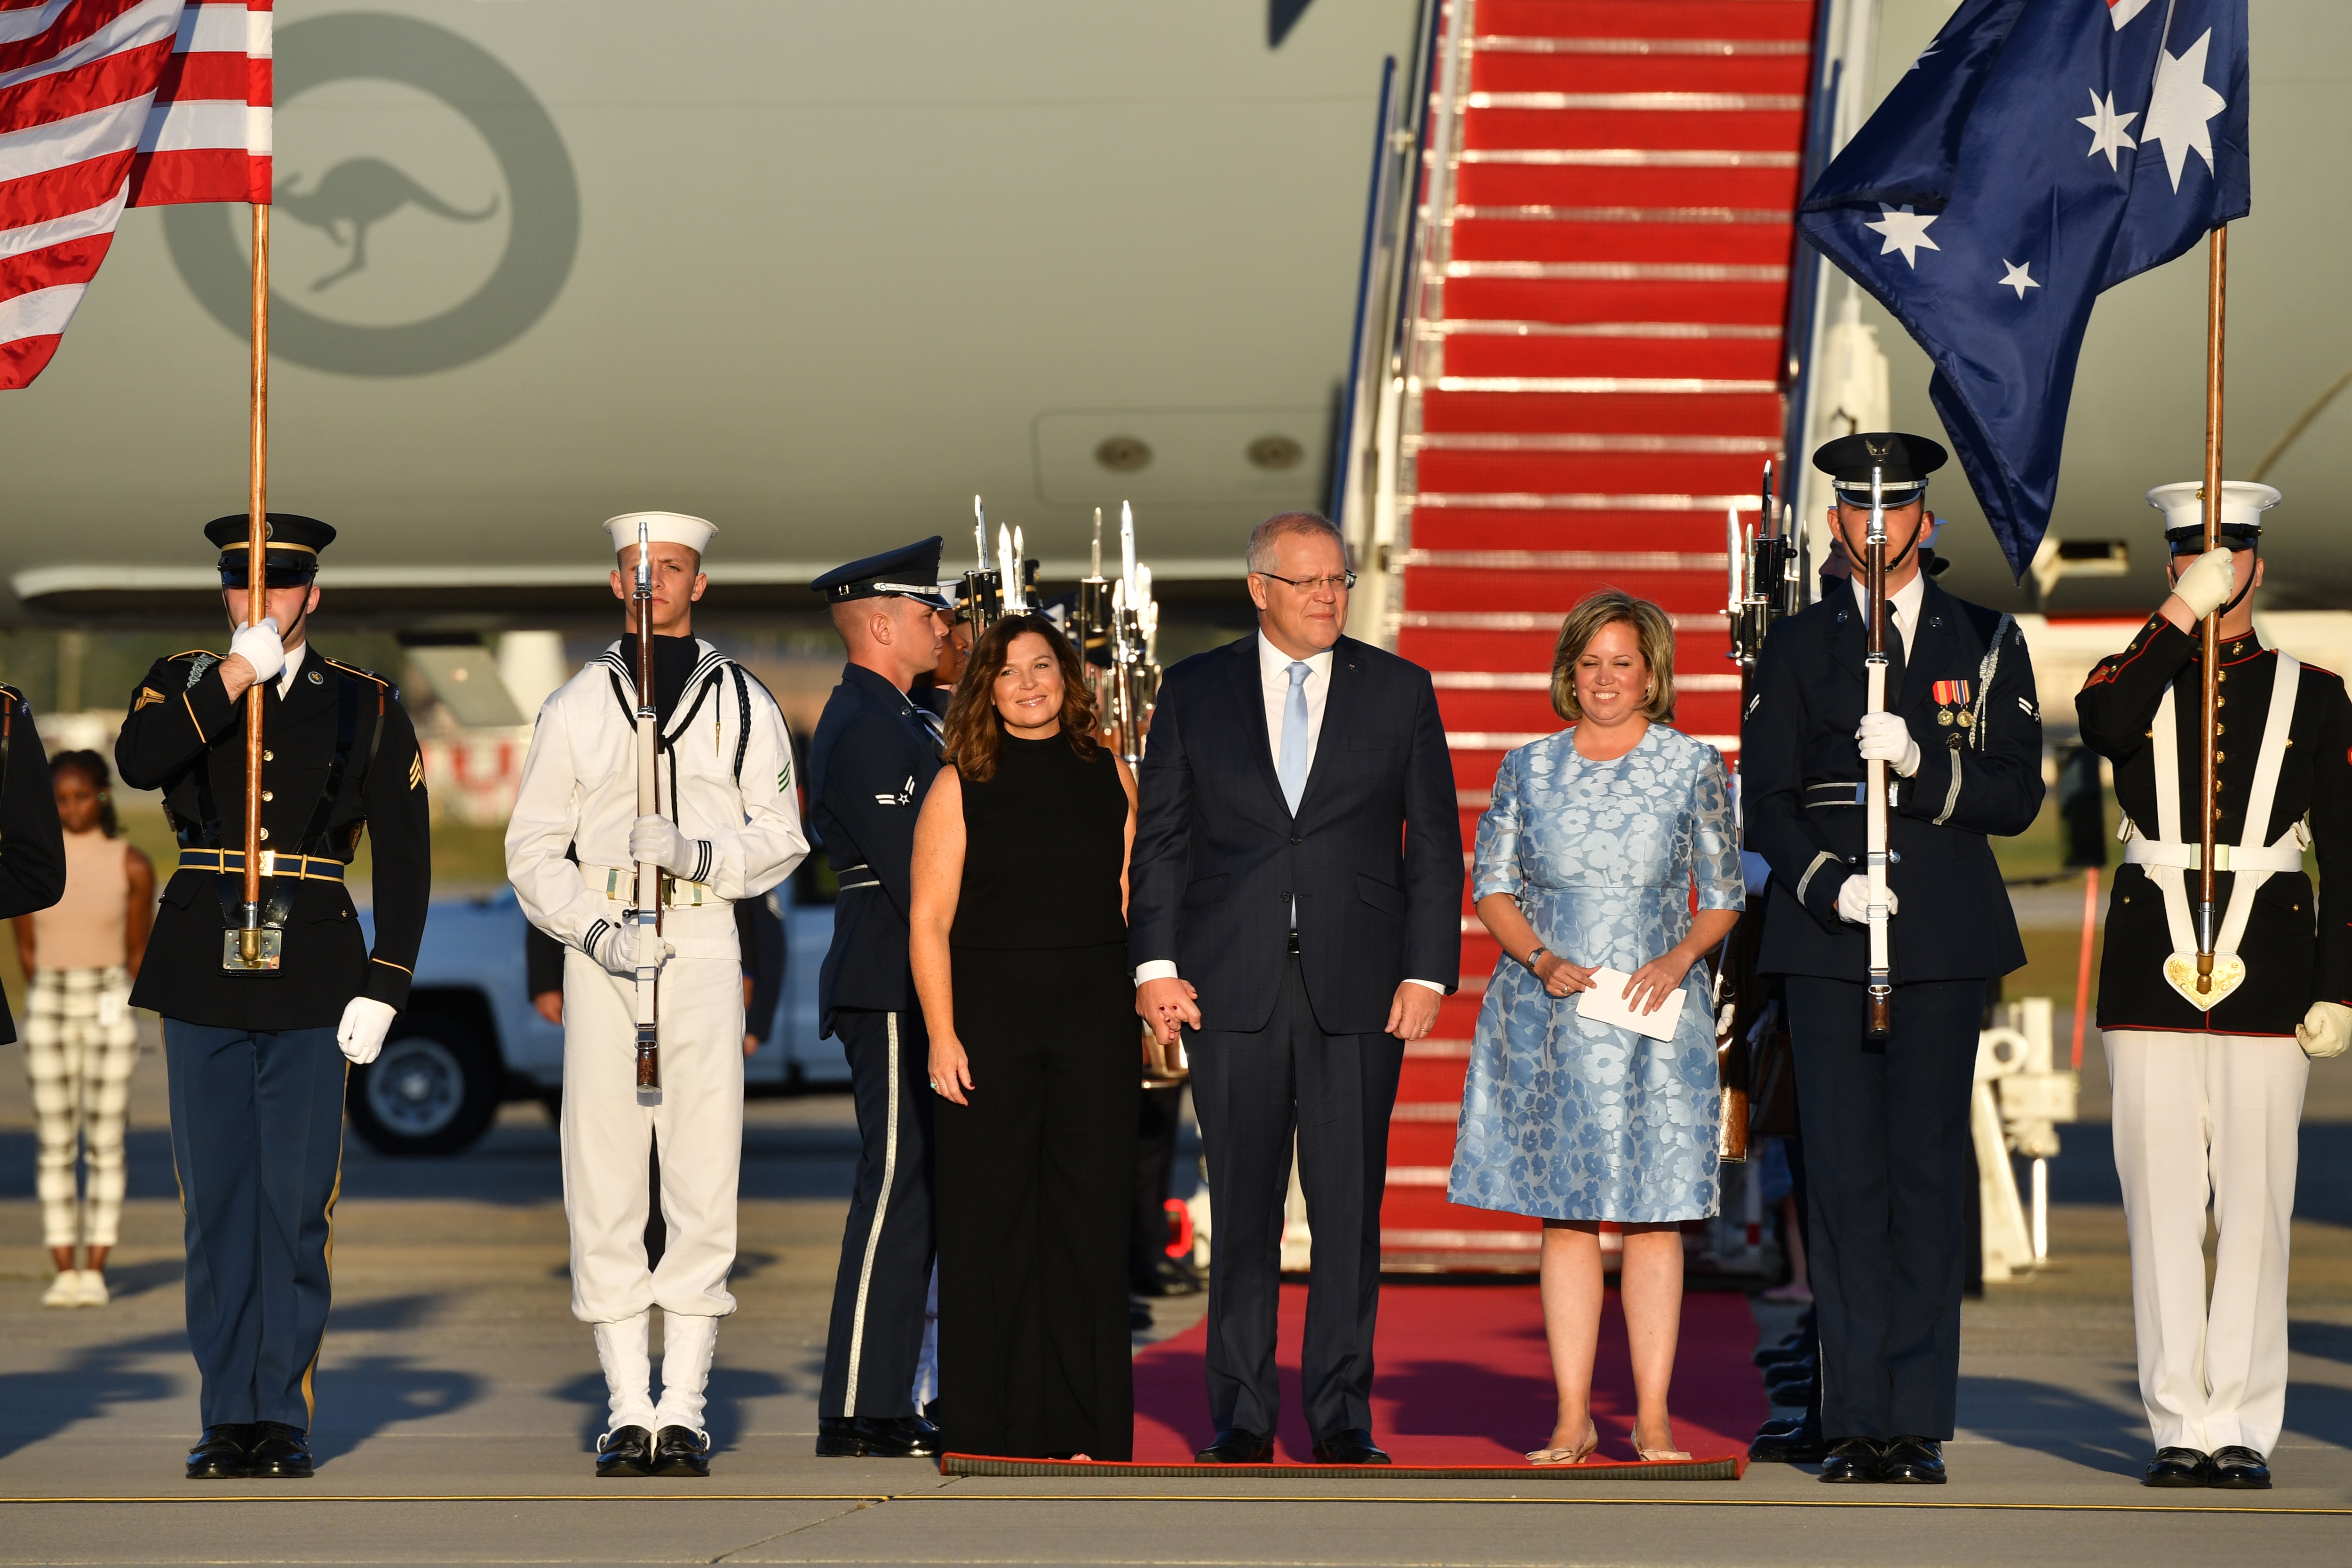 وصول رئيس الوزراء سكوت موريسون وزوجته جيني في زيارة دولة في واشنطن العاصمة.